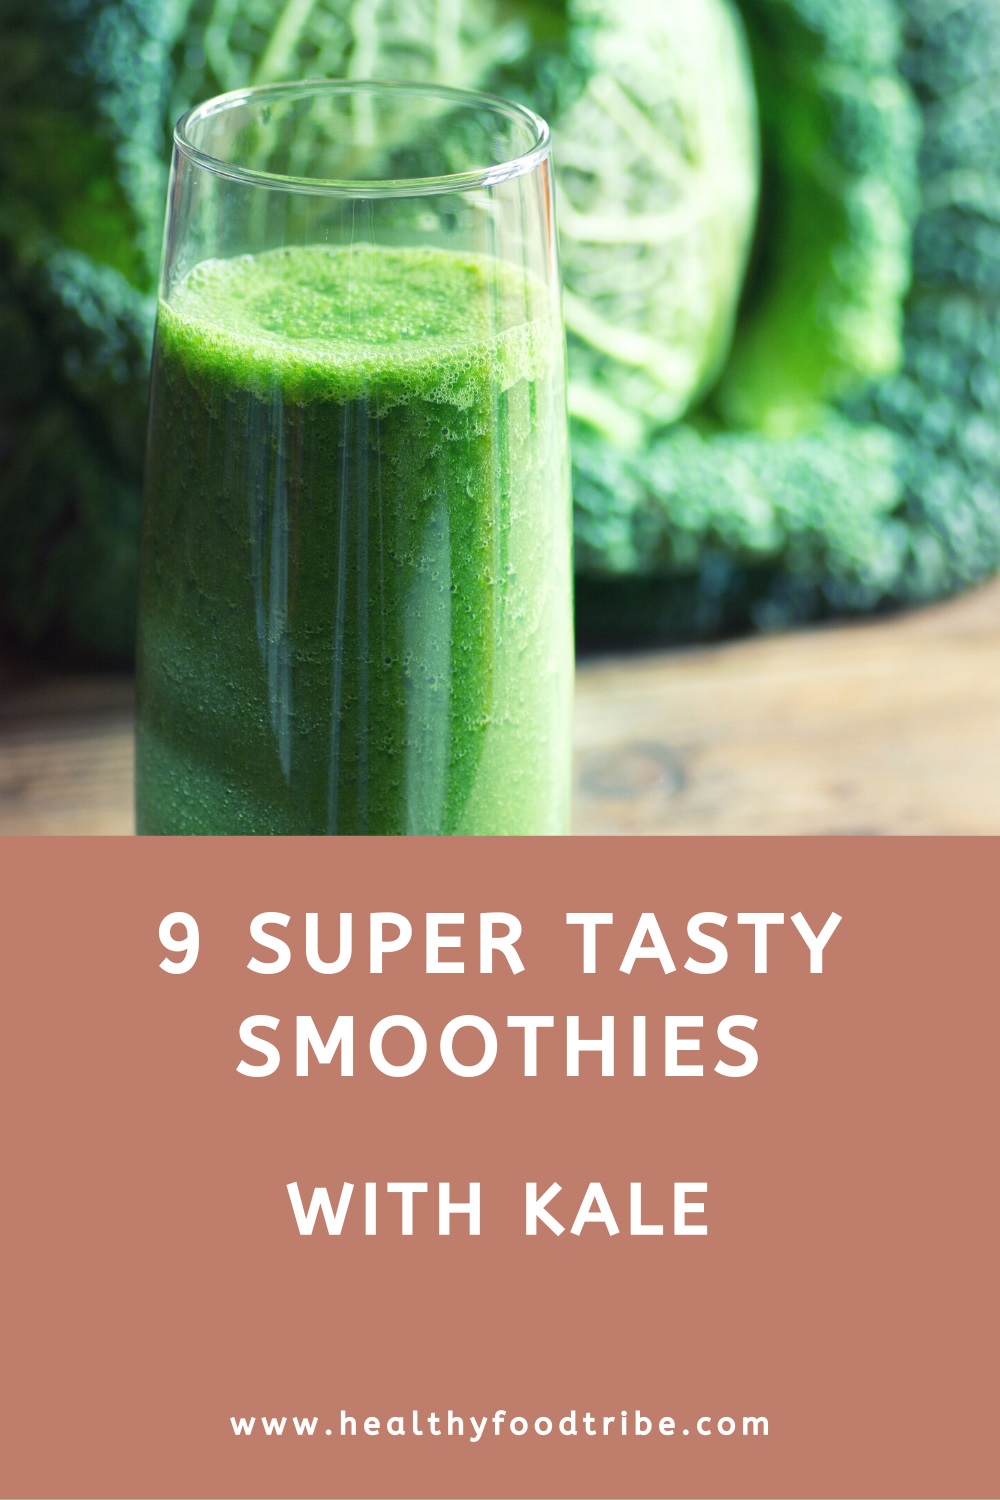 8 Tasty kale smoothies